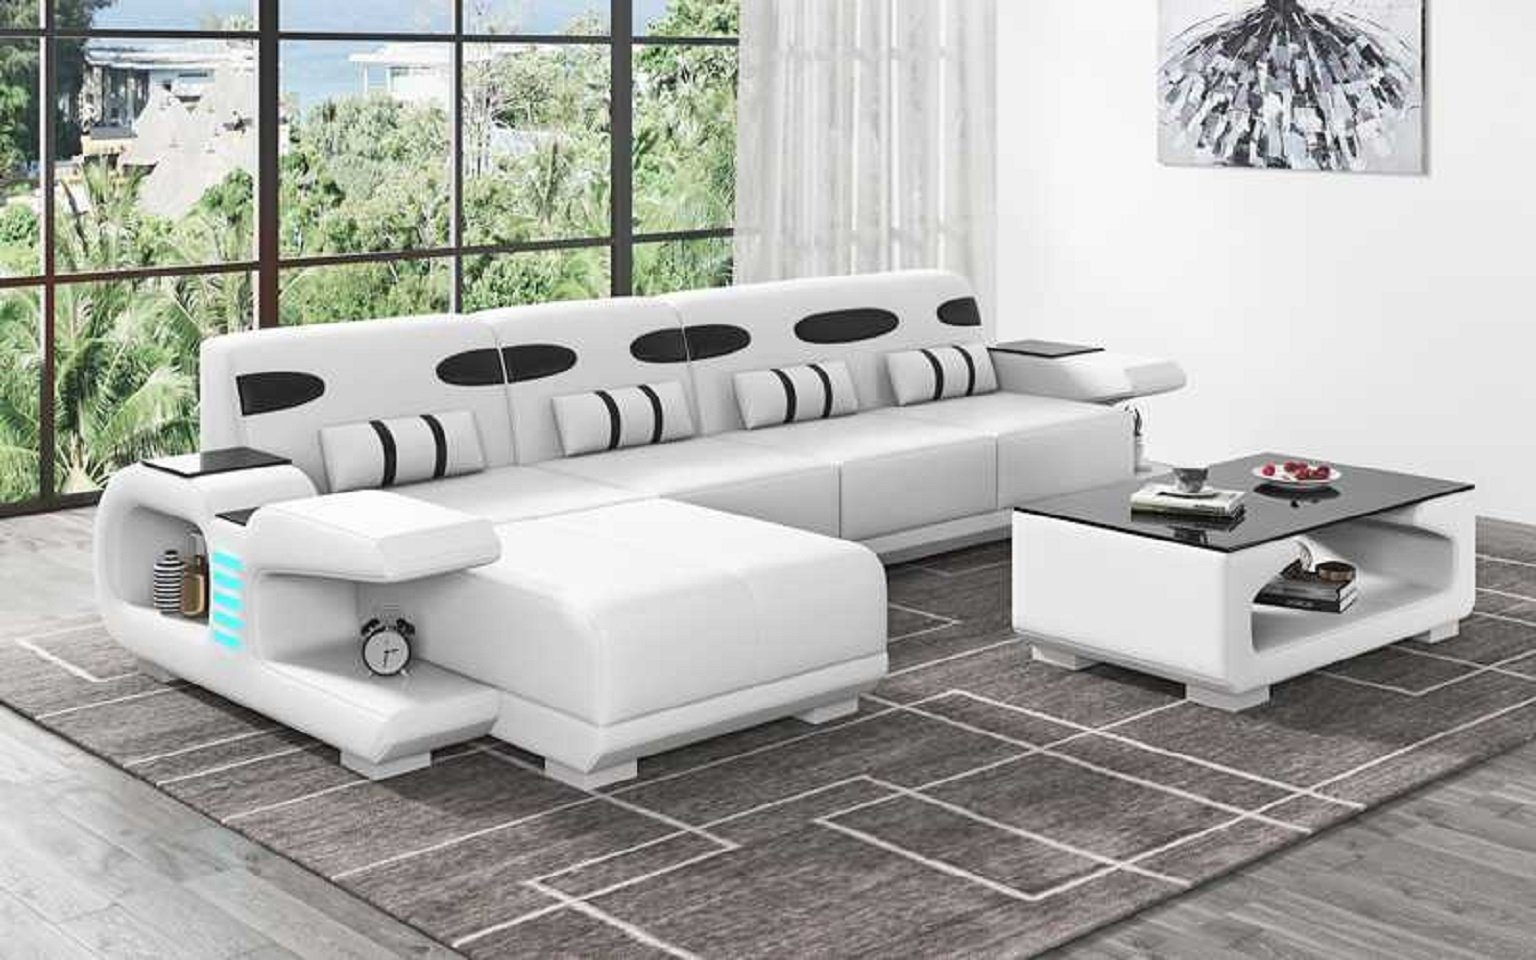 JVmoebel Ecksofa Design L Kunstleder Made Weiß 3 Sofa Modern Ecksofa Teile, Ledersofa Sofas, Europe in Form Liege